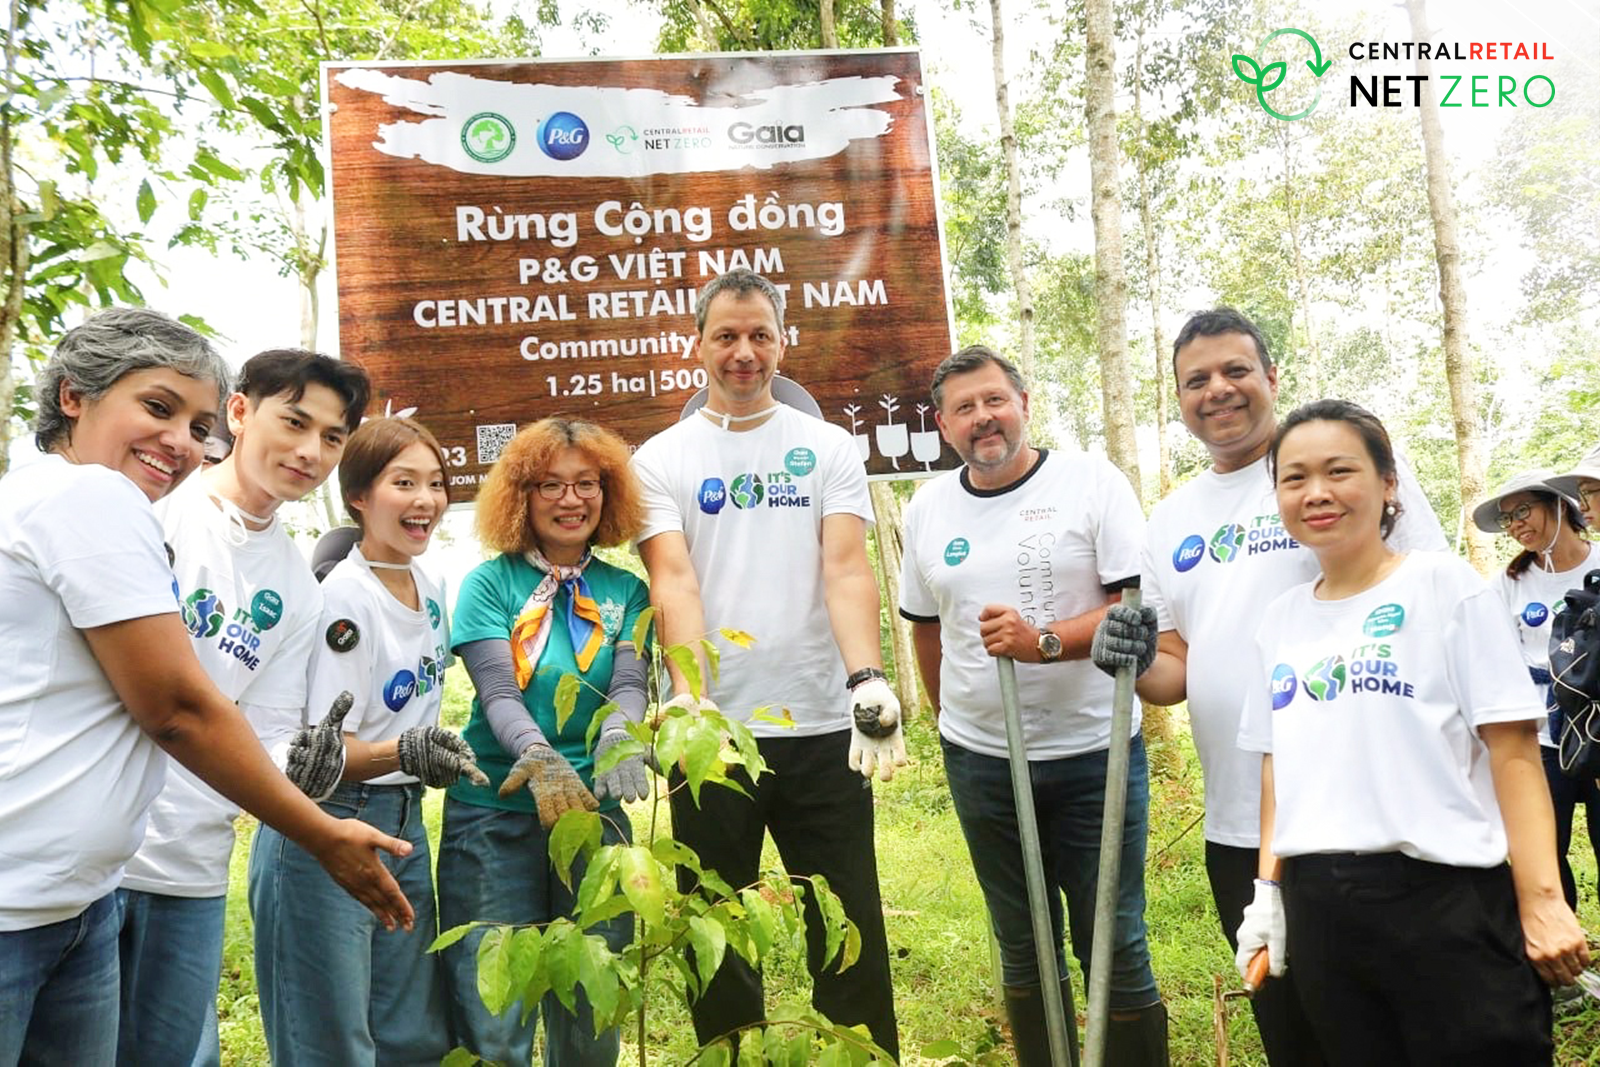 Gần 200 tình nguyện viên tham gia ngày trồng rừng tại Rừng Đồng Nai, tiếp nối hành trình “Vì Bạn Ươm Mầm 1 Việt Nam Xanh” của P&G Việt Nam và Central Retail Việt Nam